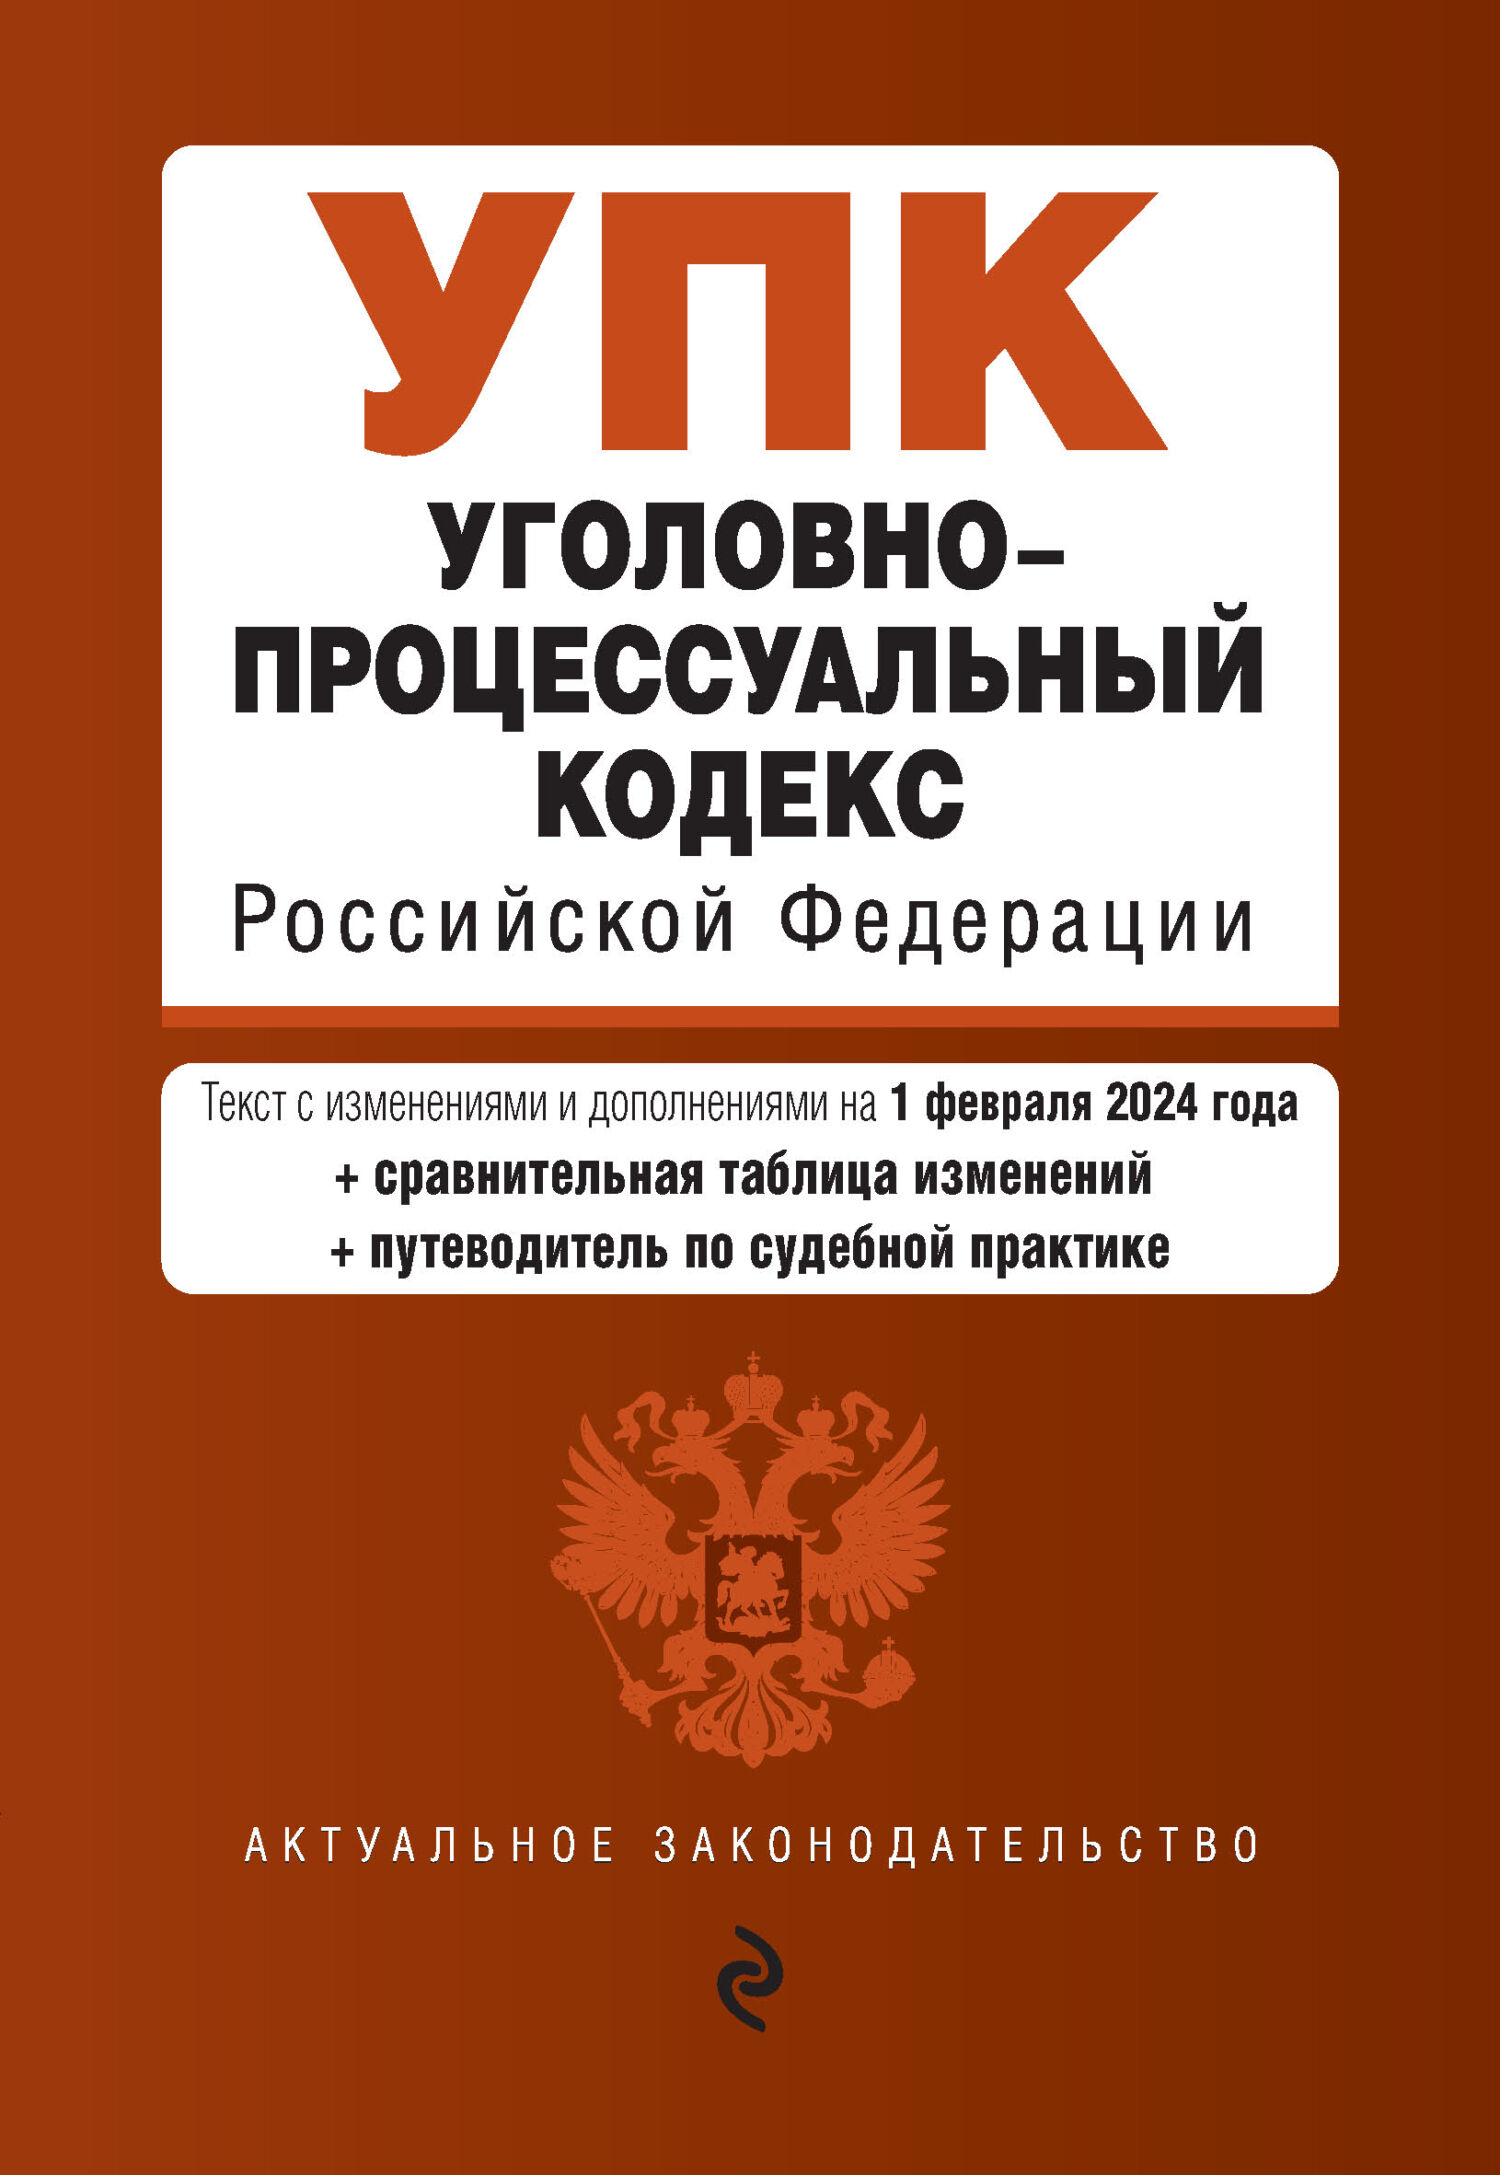 Уголовно-процессуальный кодекс Российской Федерации. Текст с изменениями и дополнениями на 3 февраля 2019 года (+ сравнительная таблица изменений)